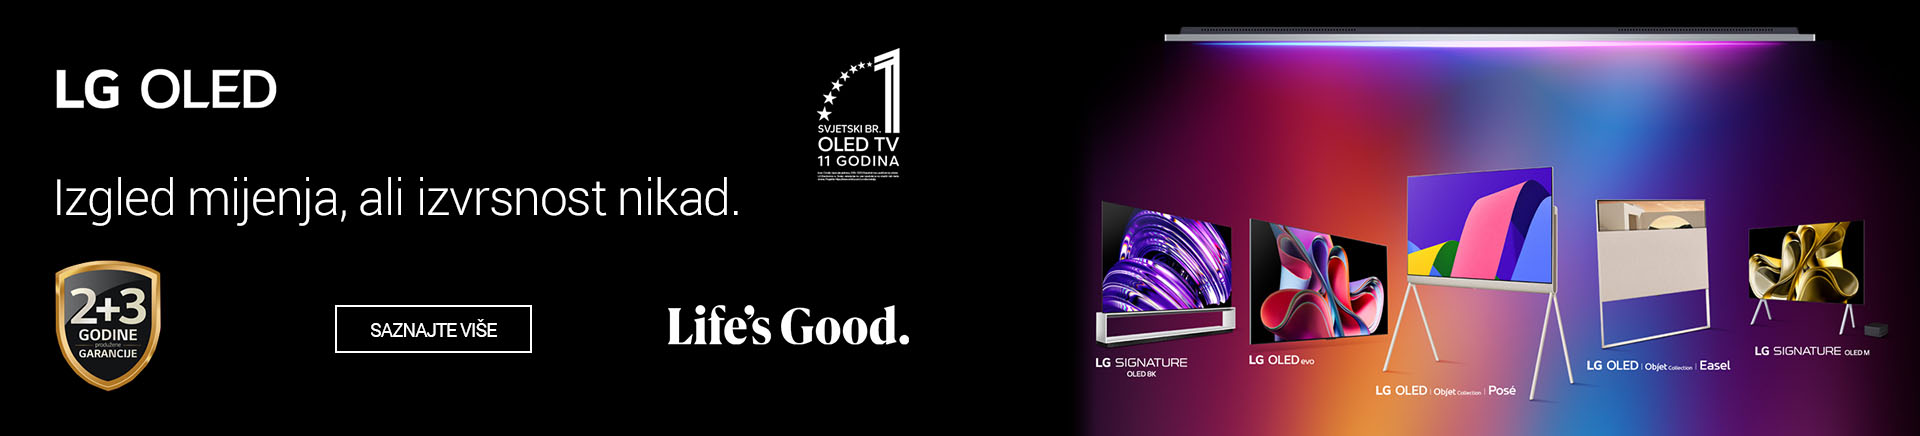 BA LG OLED TV 1 Izgled Mijenja MOBILE 380 X 436.jpg